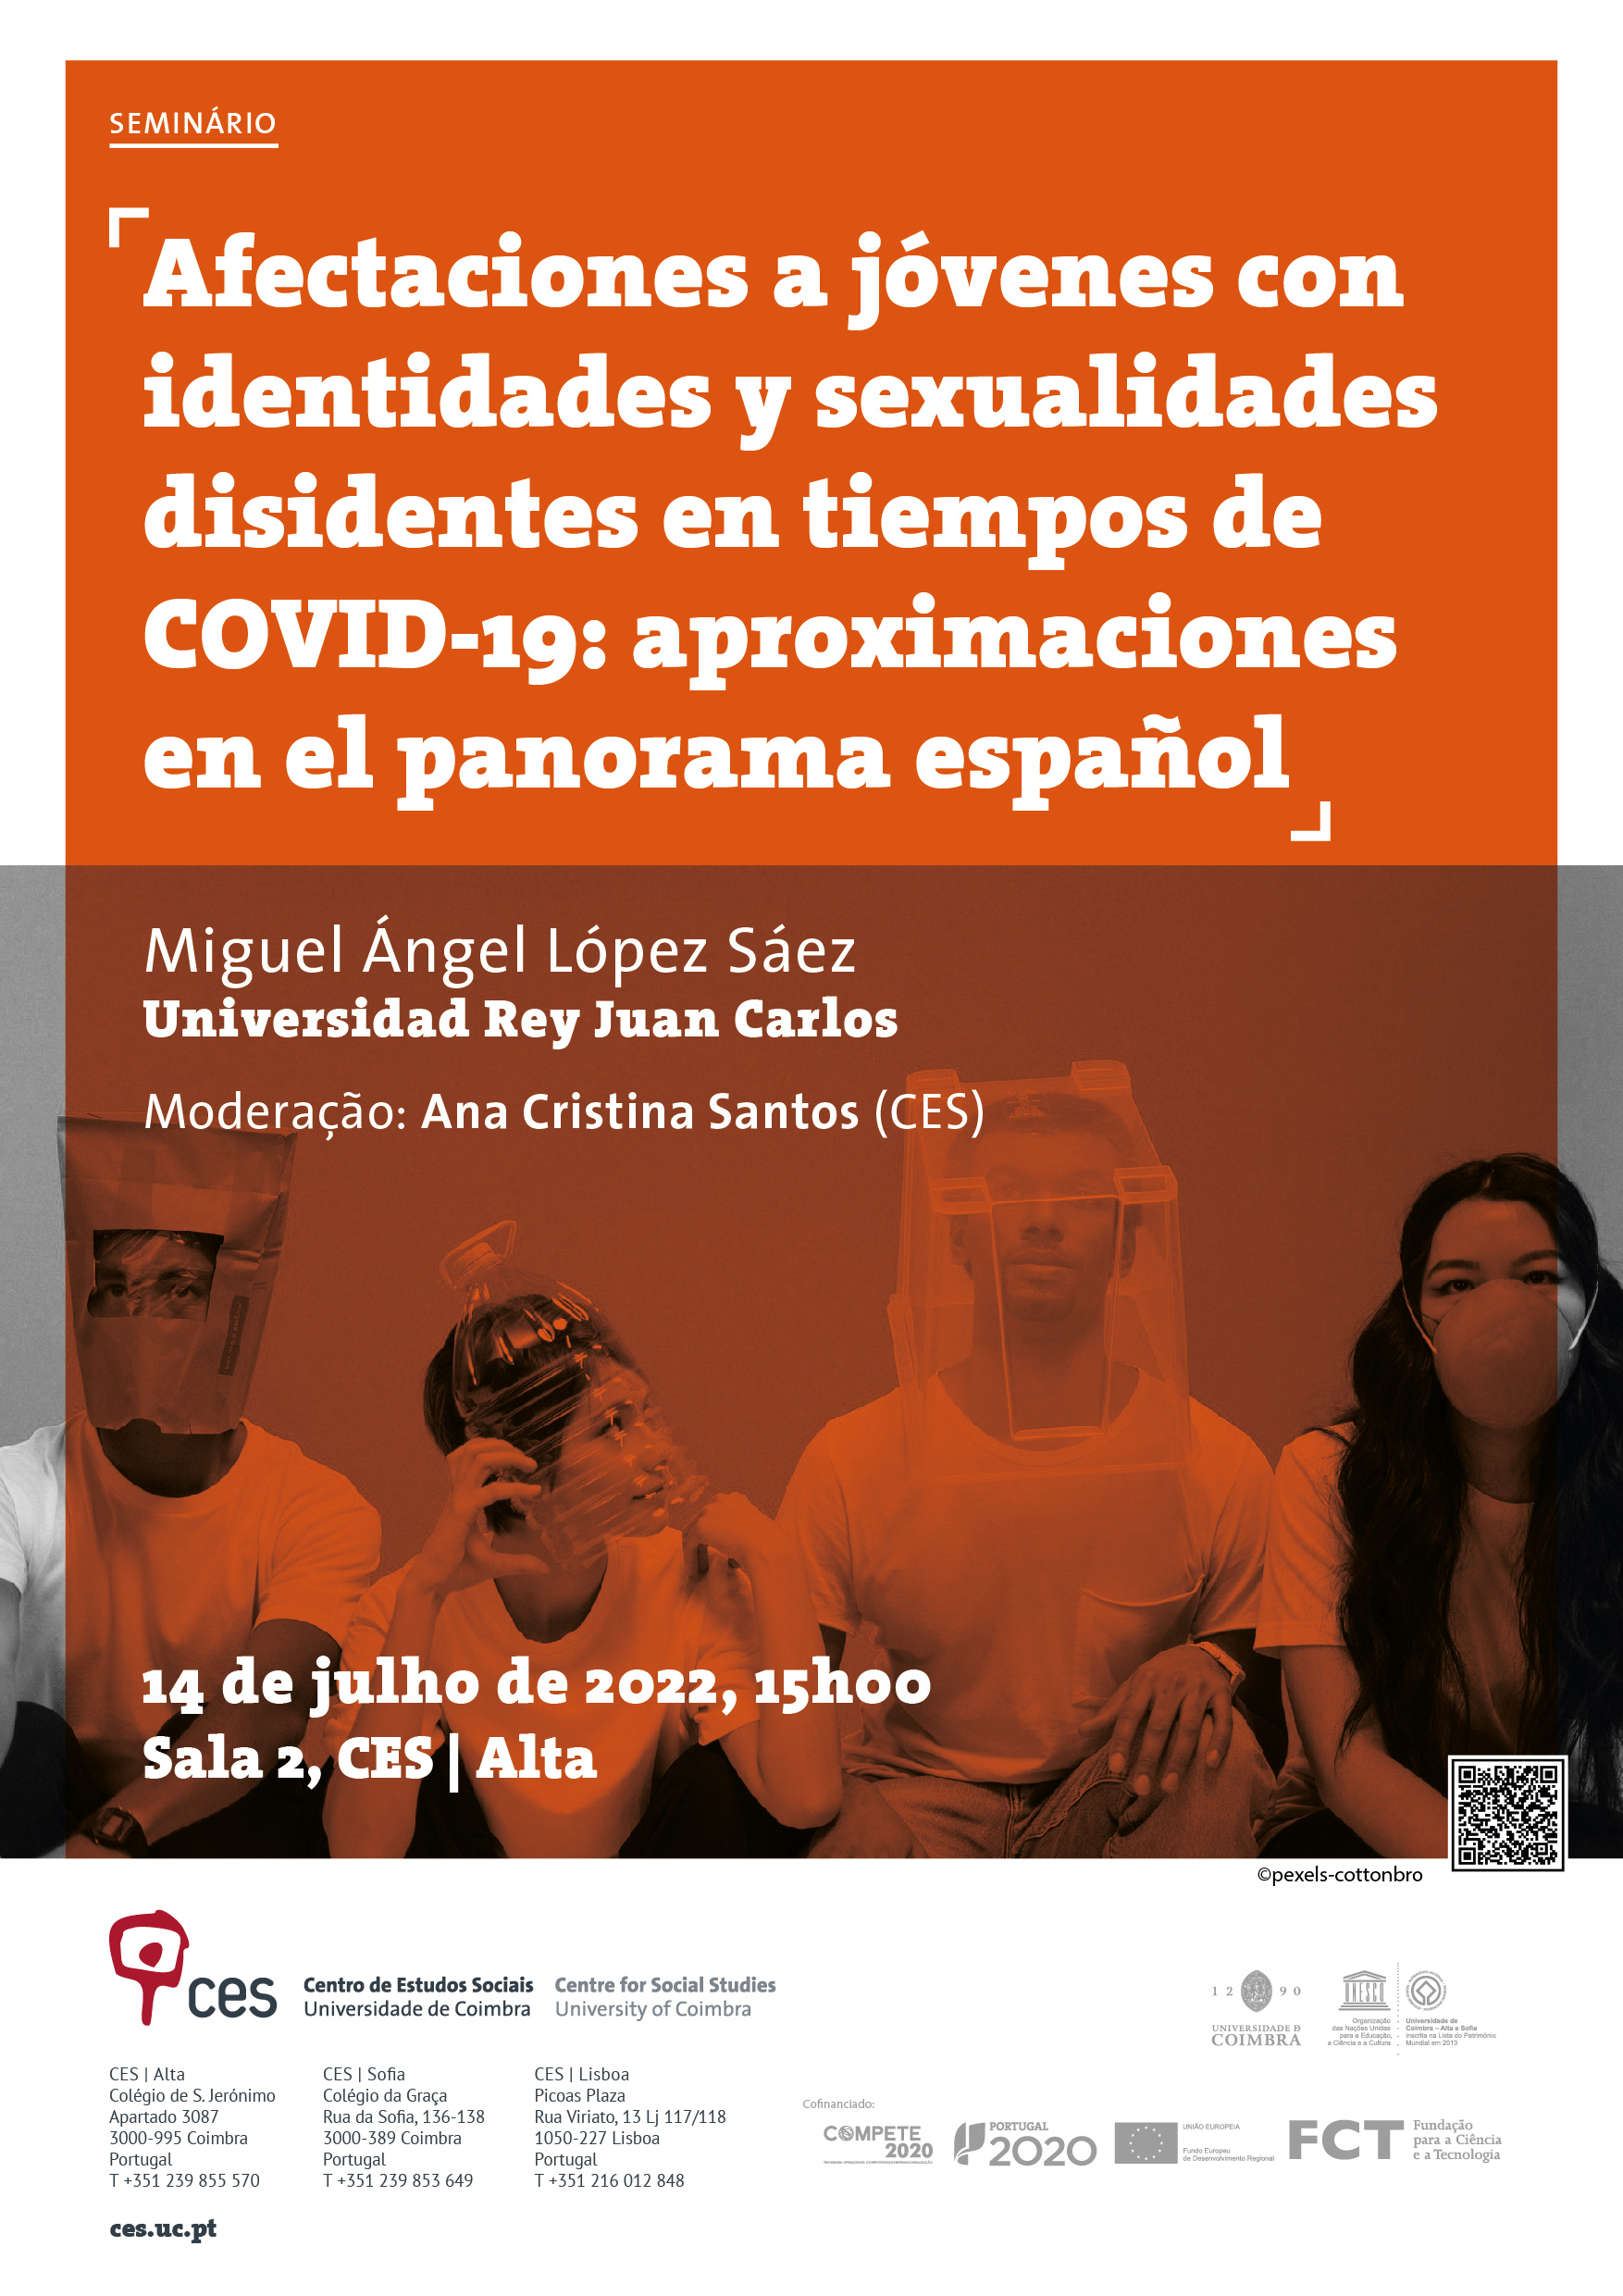 Afectaciones a jóvenes con identidades y sexualidades disidentes en tiempos de COVID-19: aproximaciones en el panorama español<span id="edit_39224"><script>$(function() { $('#edit_39224').load( "/myces/user/editobj.php?tipo=evento&id=39224" ); });</script></span>